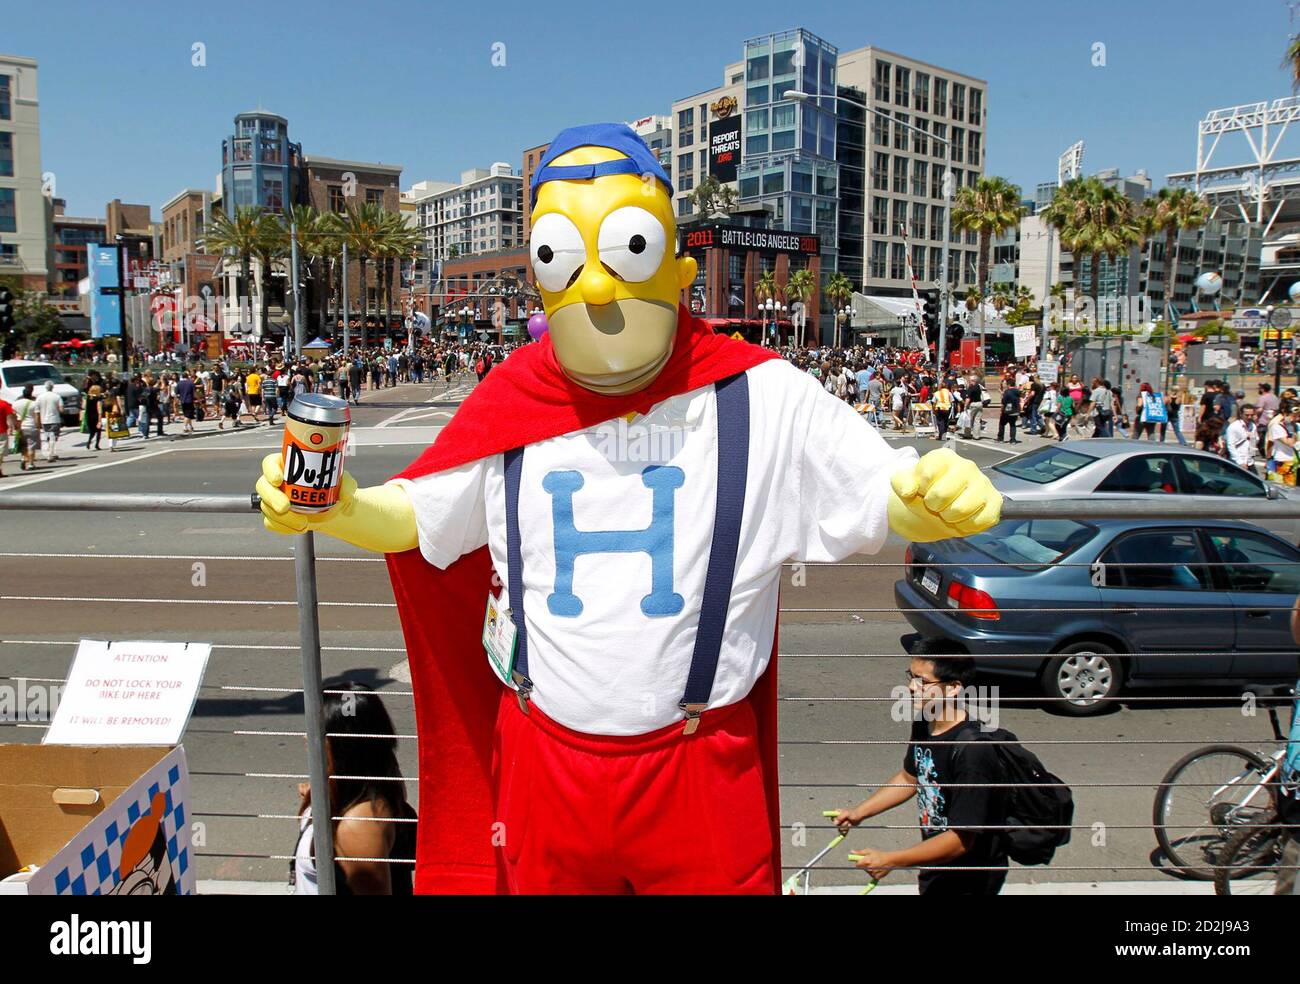 Ein Teilnehmer kommt 24. Juli 2010 gekleidet als Homer Simpson aus der Fernsehshow "The Simpsons" am dritten Tag der pop-Kultur-Konvention Comic Con in San Diego, Kalifornien.    REUTERS/Mike Blake (Vereinigte Staaten - Tags: ENTERTAINMENT) Stockfoto